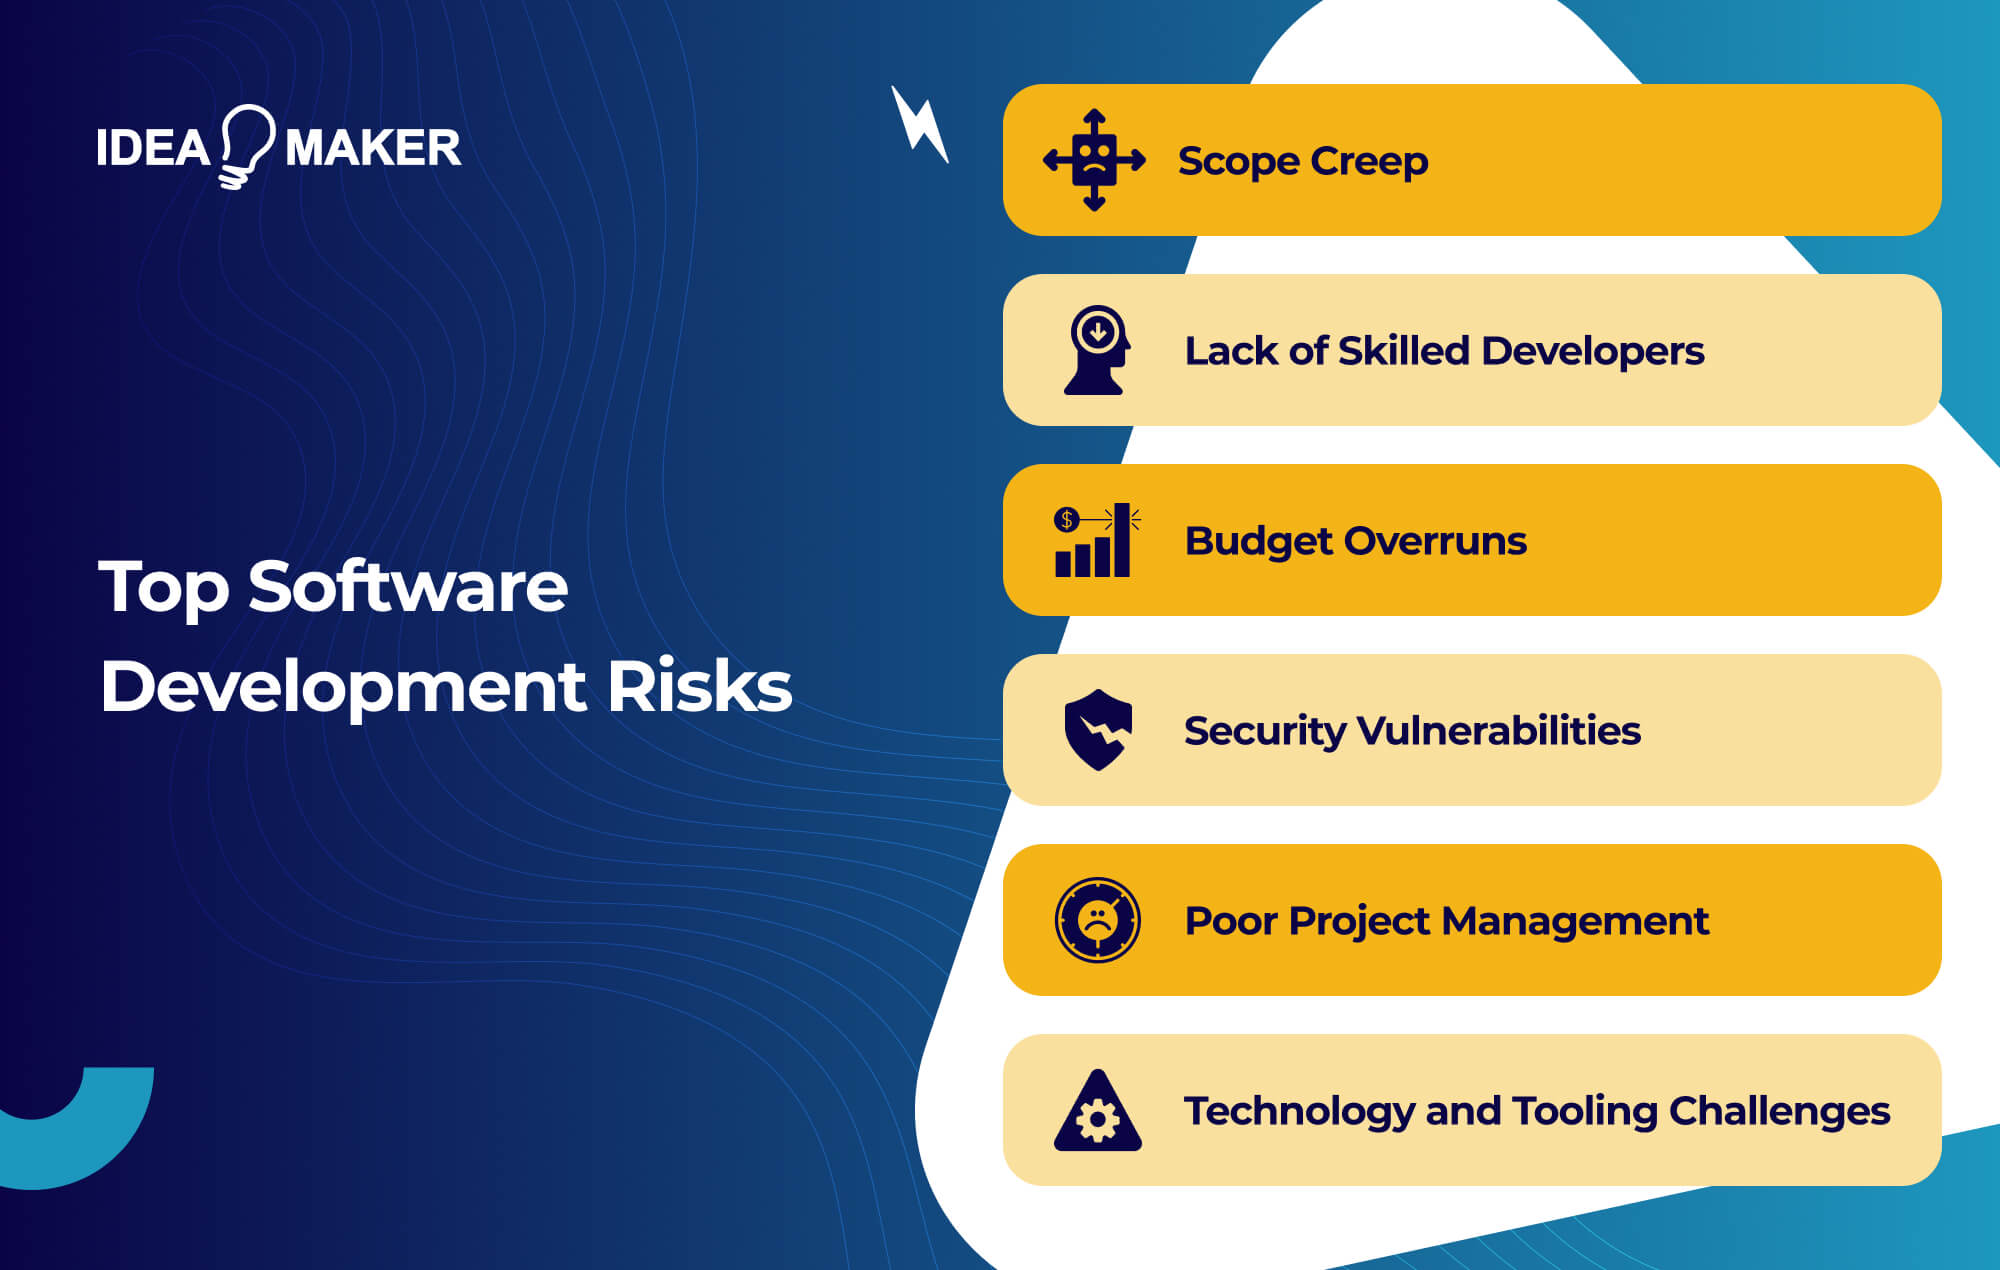 Ideamaker - Top Software Development Risks